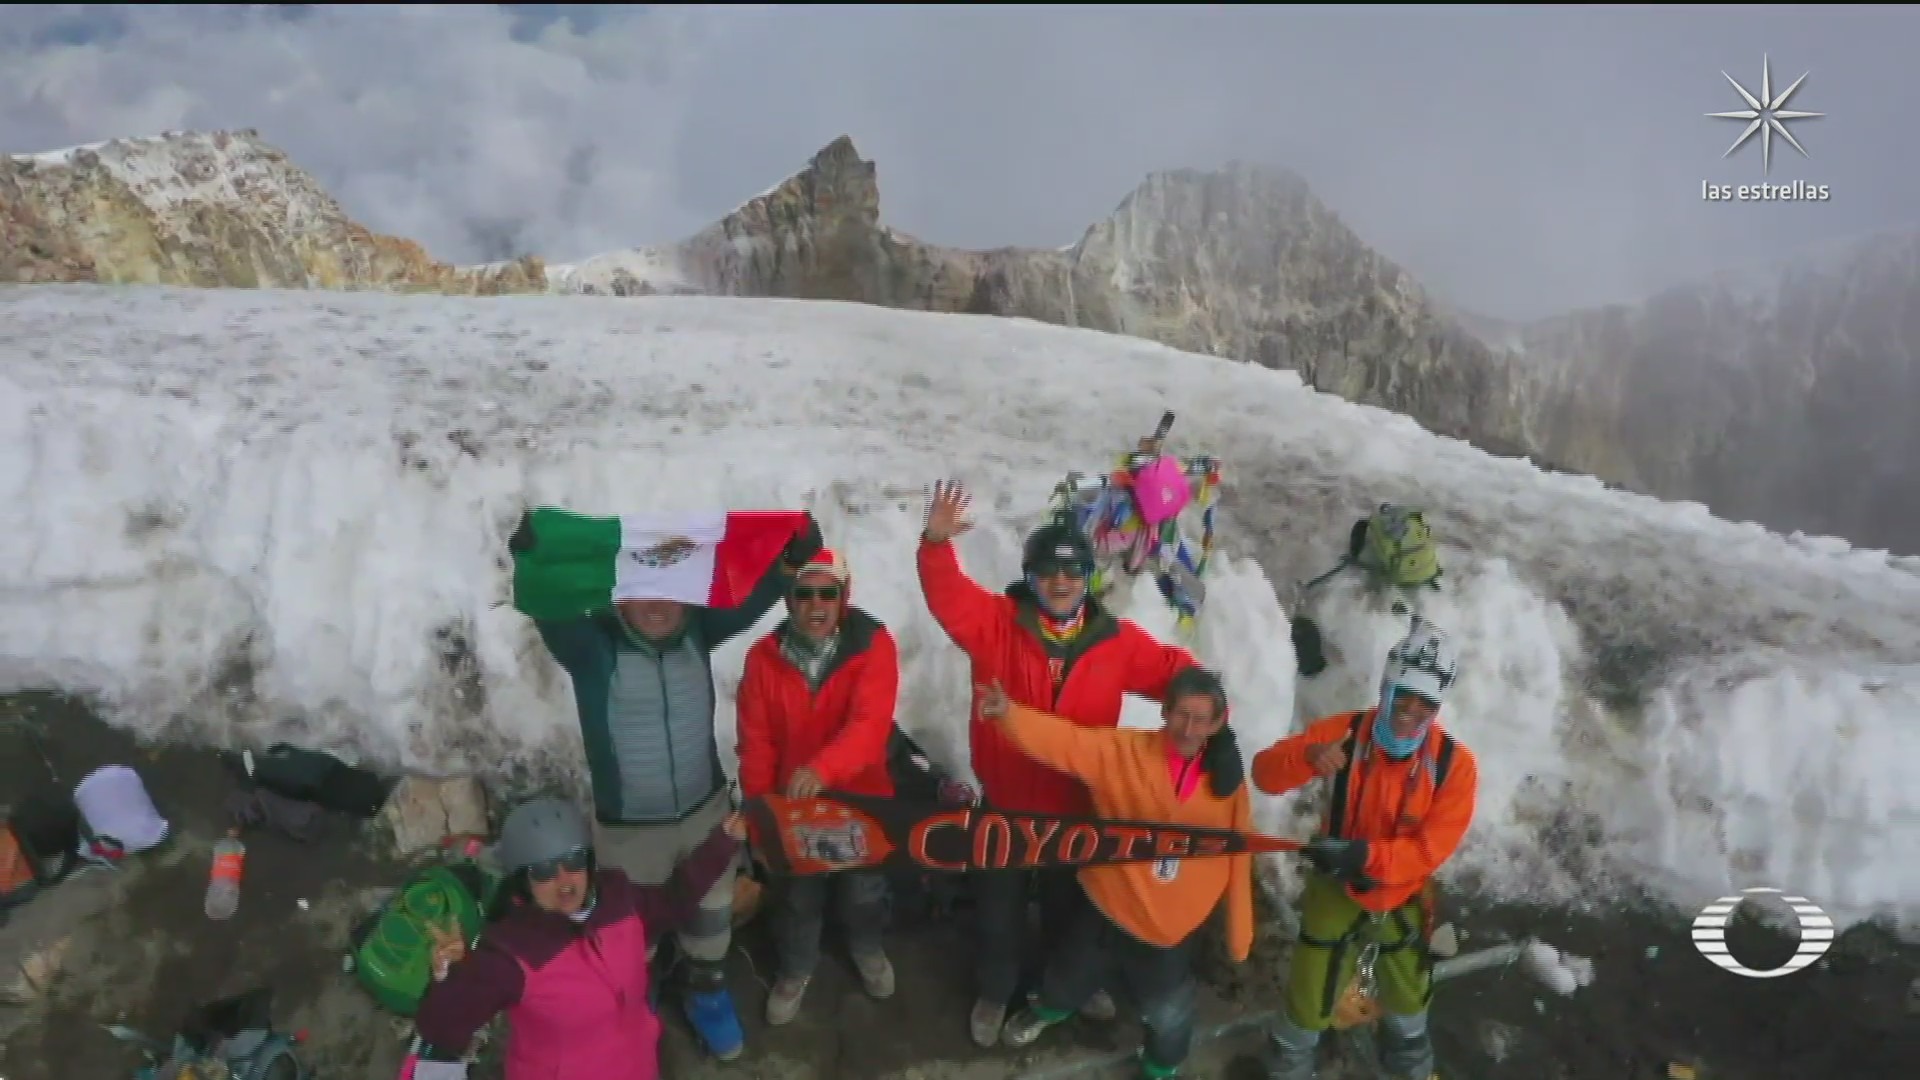 alpinista mas longevo de mexico llega a la cima del pico de orizaba